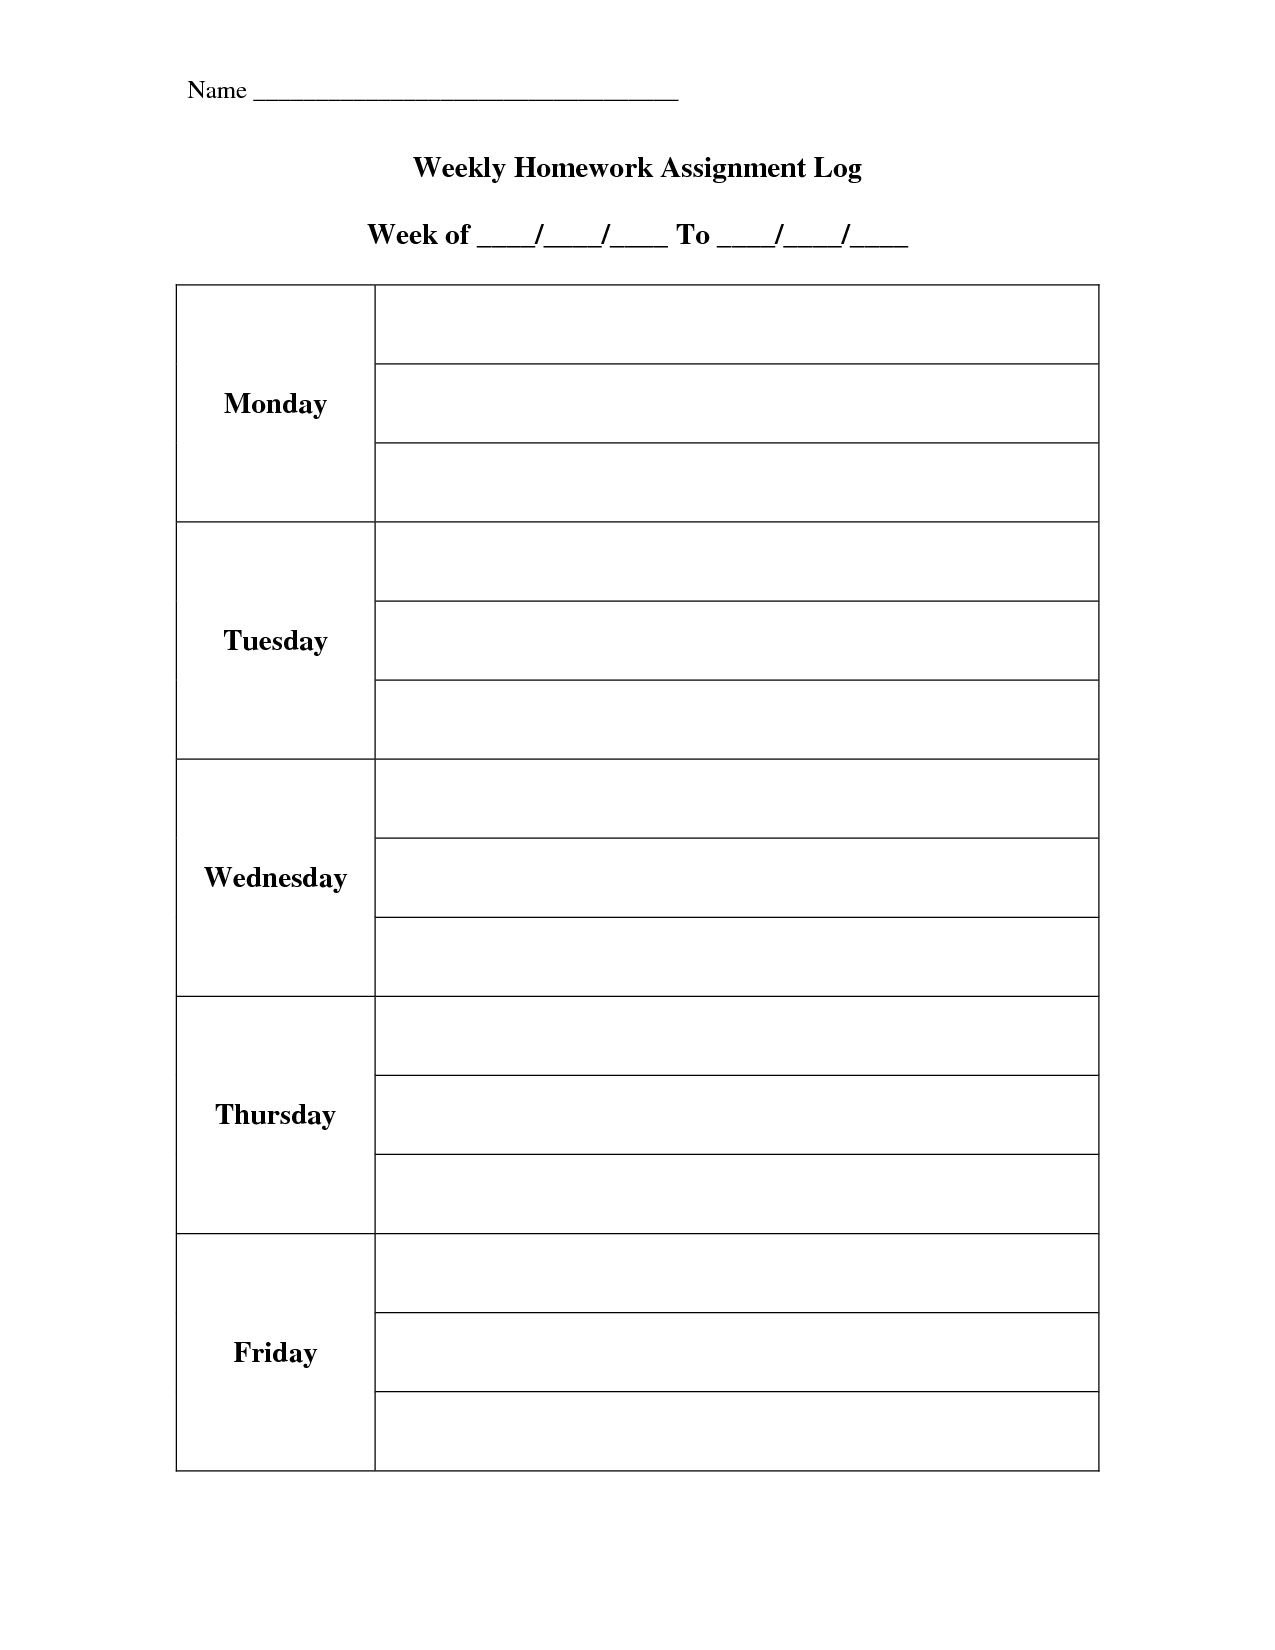 Weekly Assignment Log Template Calendar Design